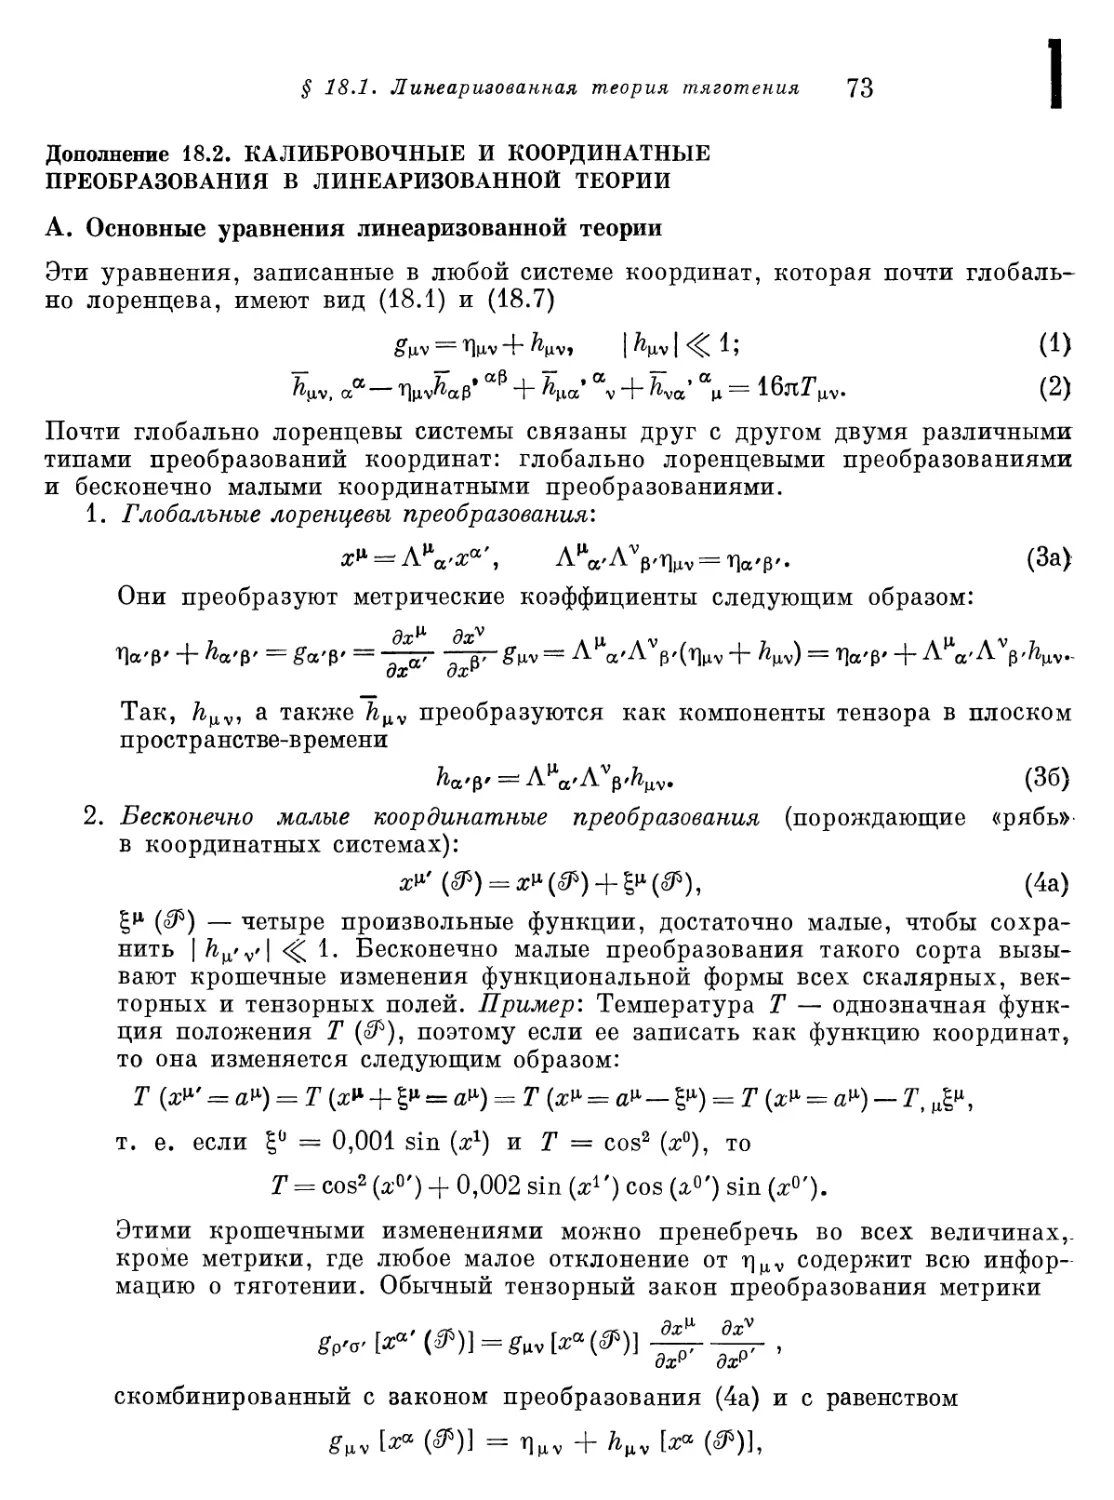 Дополнение 18.2. Калибровочные и координатные преобразования в линеаризованной теории